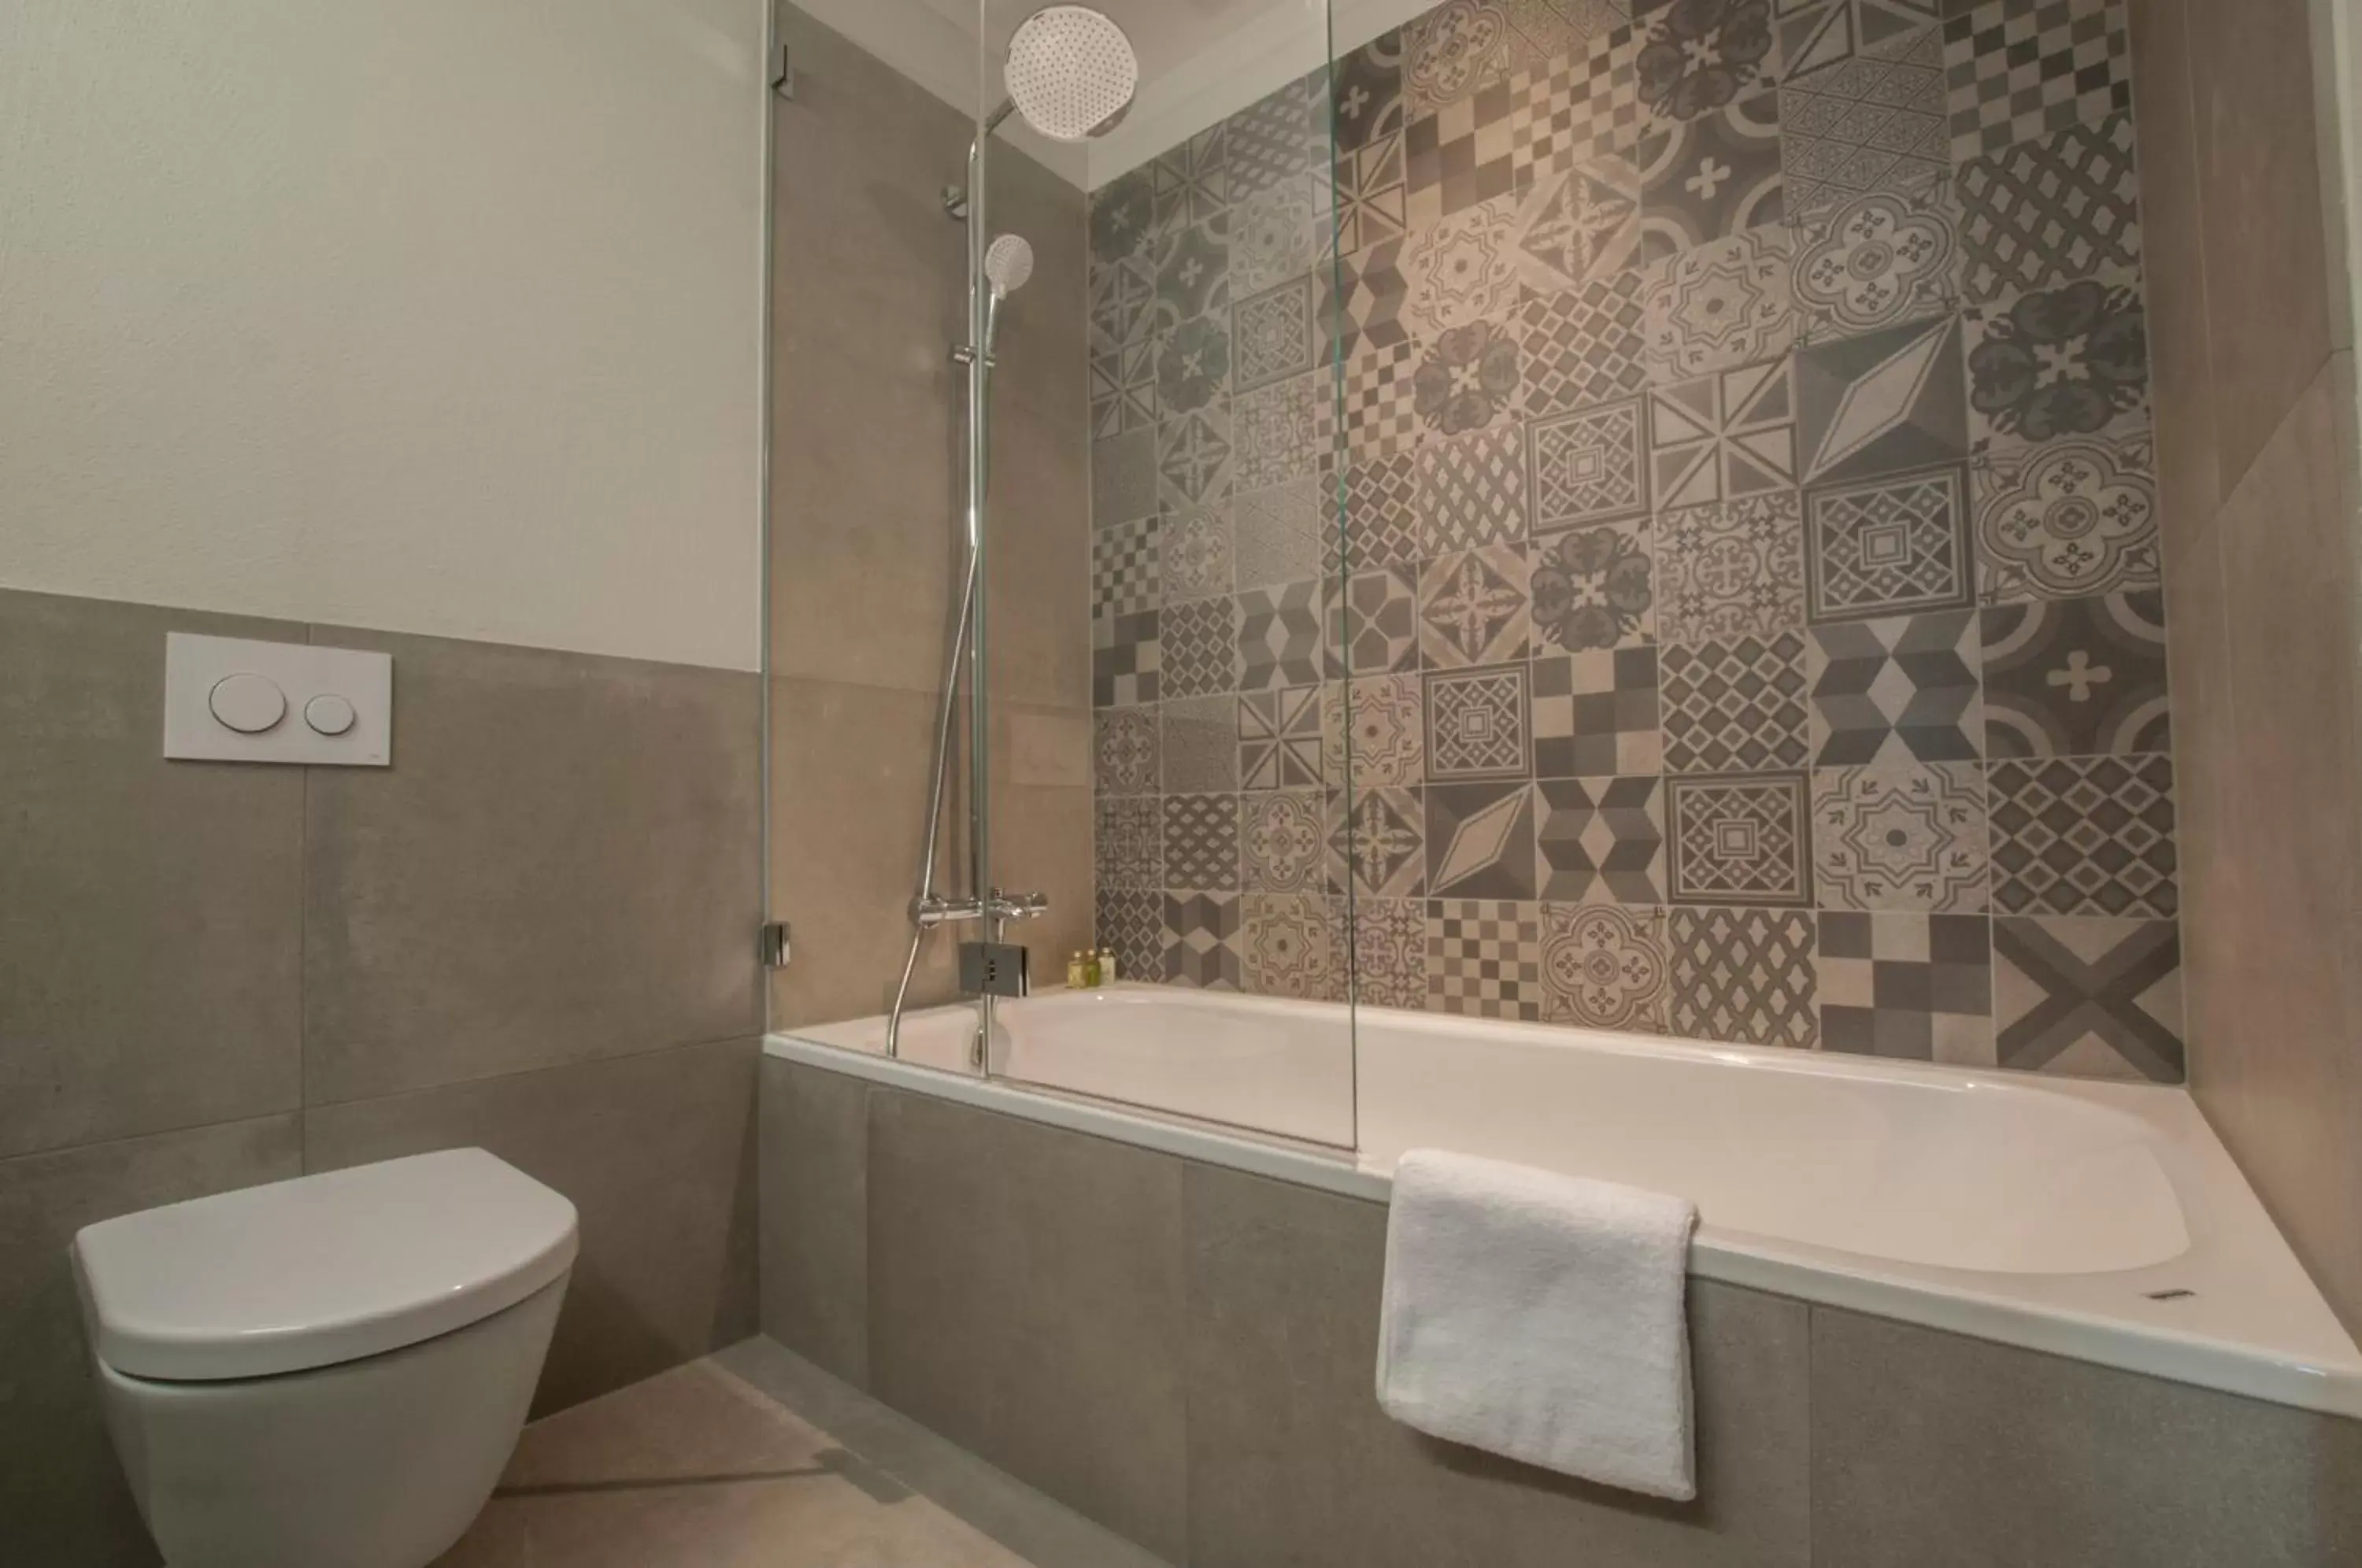 Decorative detail, Bathroom in Focus Hotel